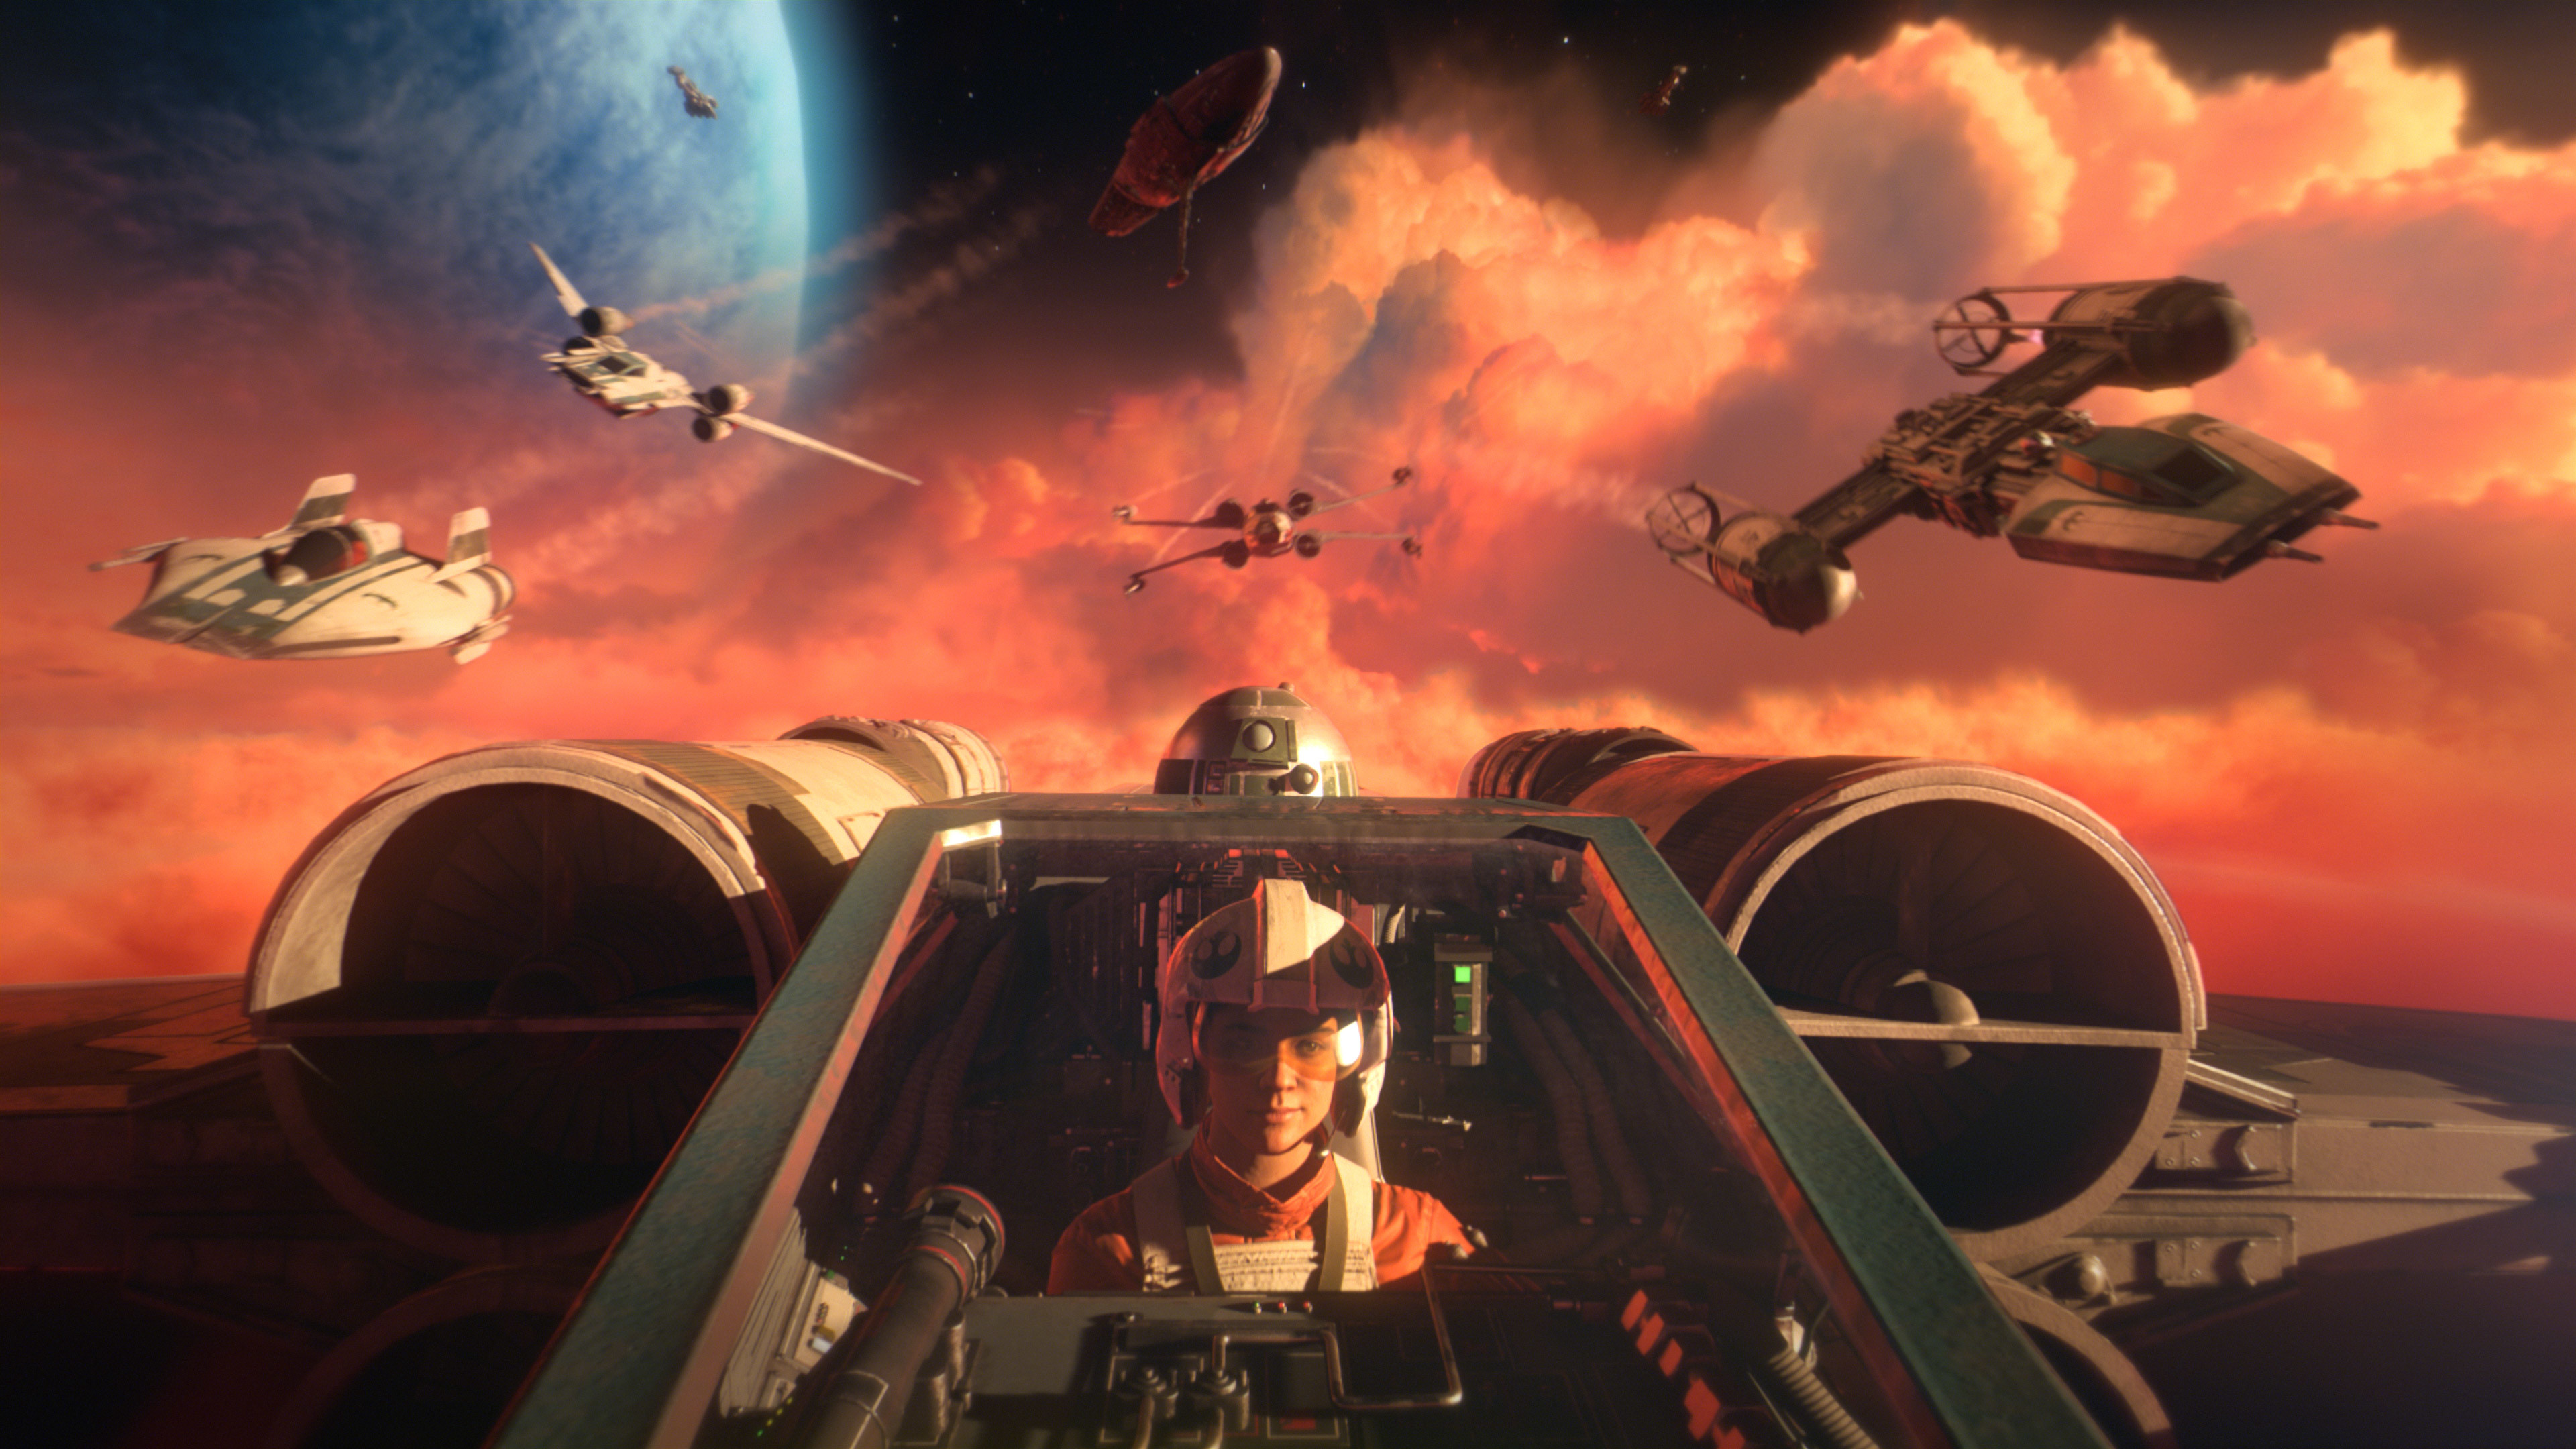 『スター・ウォーズ』の新作ゲーム『Star Wars：スコードロン』正式発表。Xウイングやタイ・ファイターに乗り込めるVR対応3Dシューティング、最大5対5のマルチプレイ_002